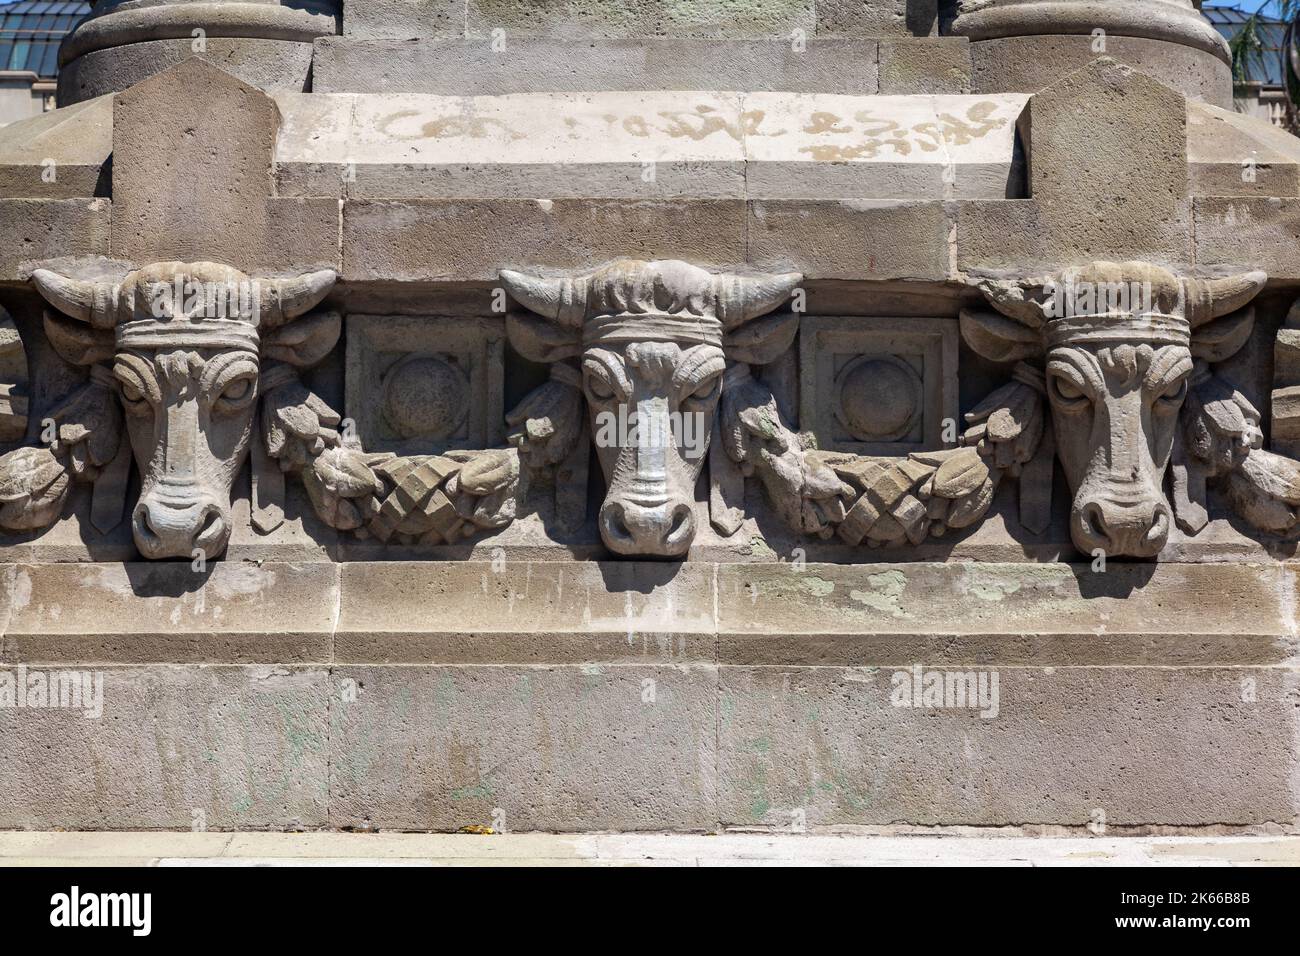 Un monument avec des têtes d'animaux en pierre sculptées devant le musée Bellas Artes à Santiago do Chile Banque D'Images